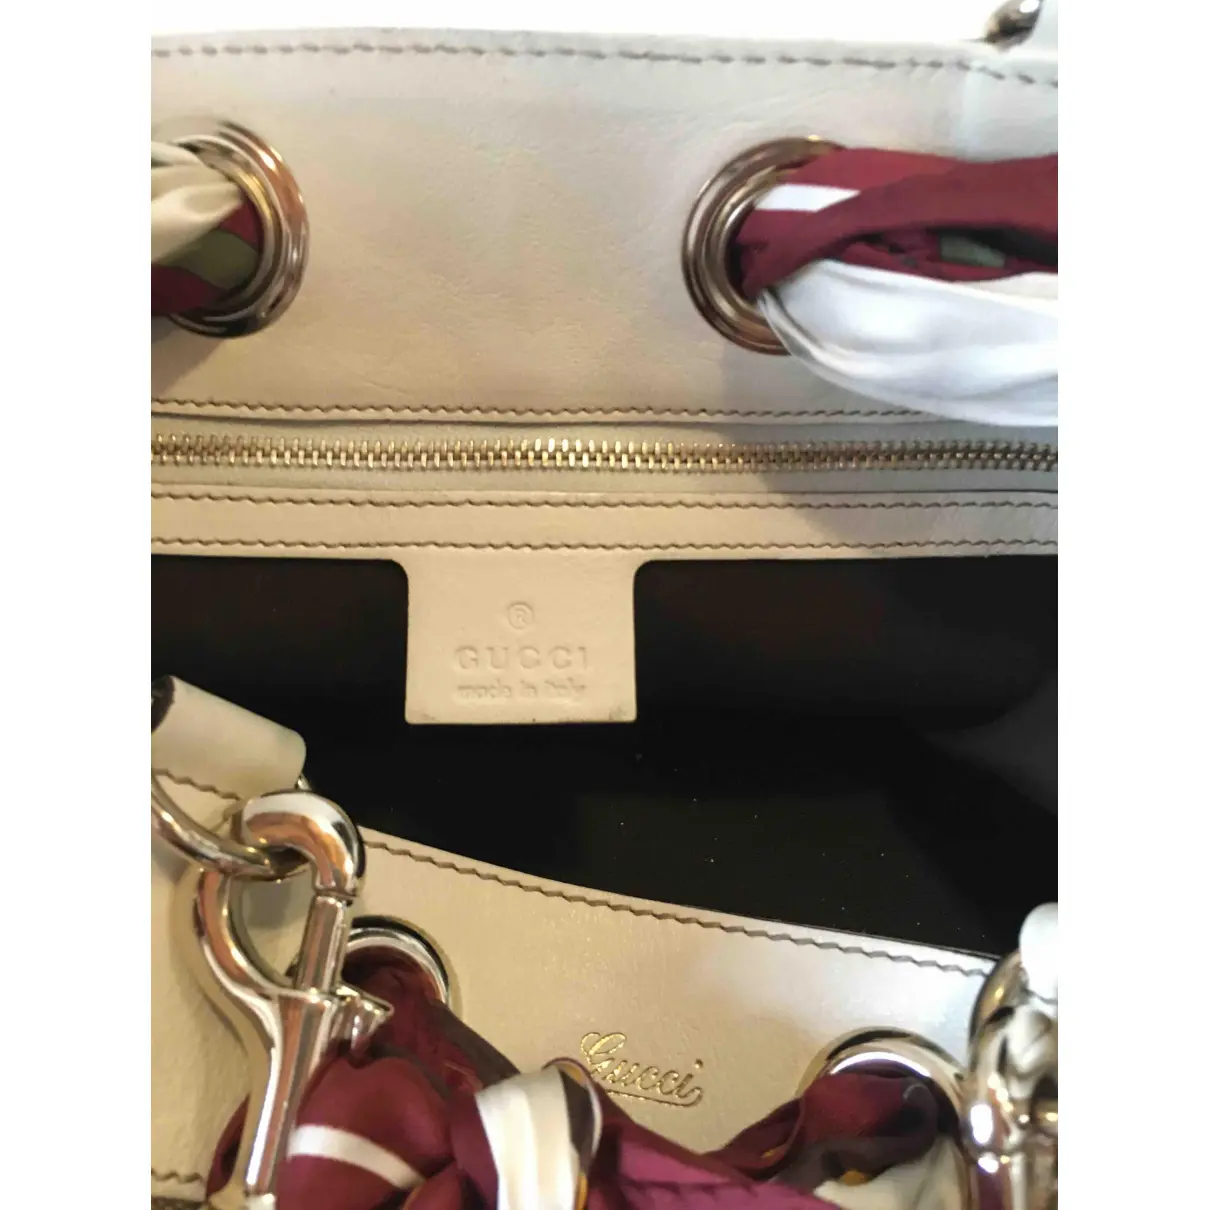 Buy Gucci Positano cloth handbag online